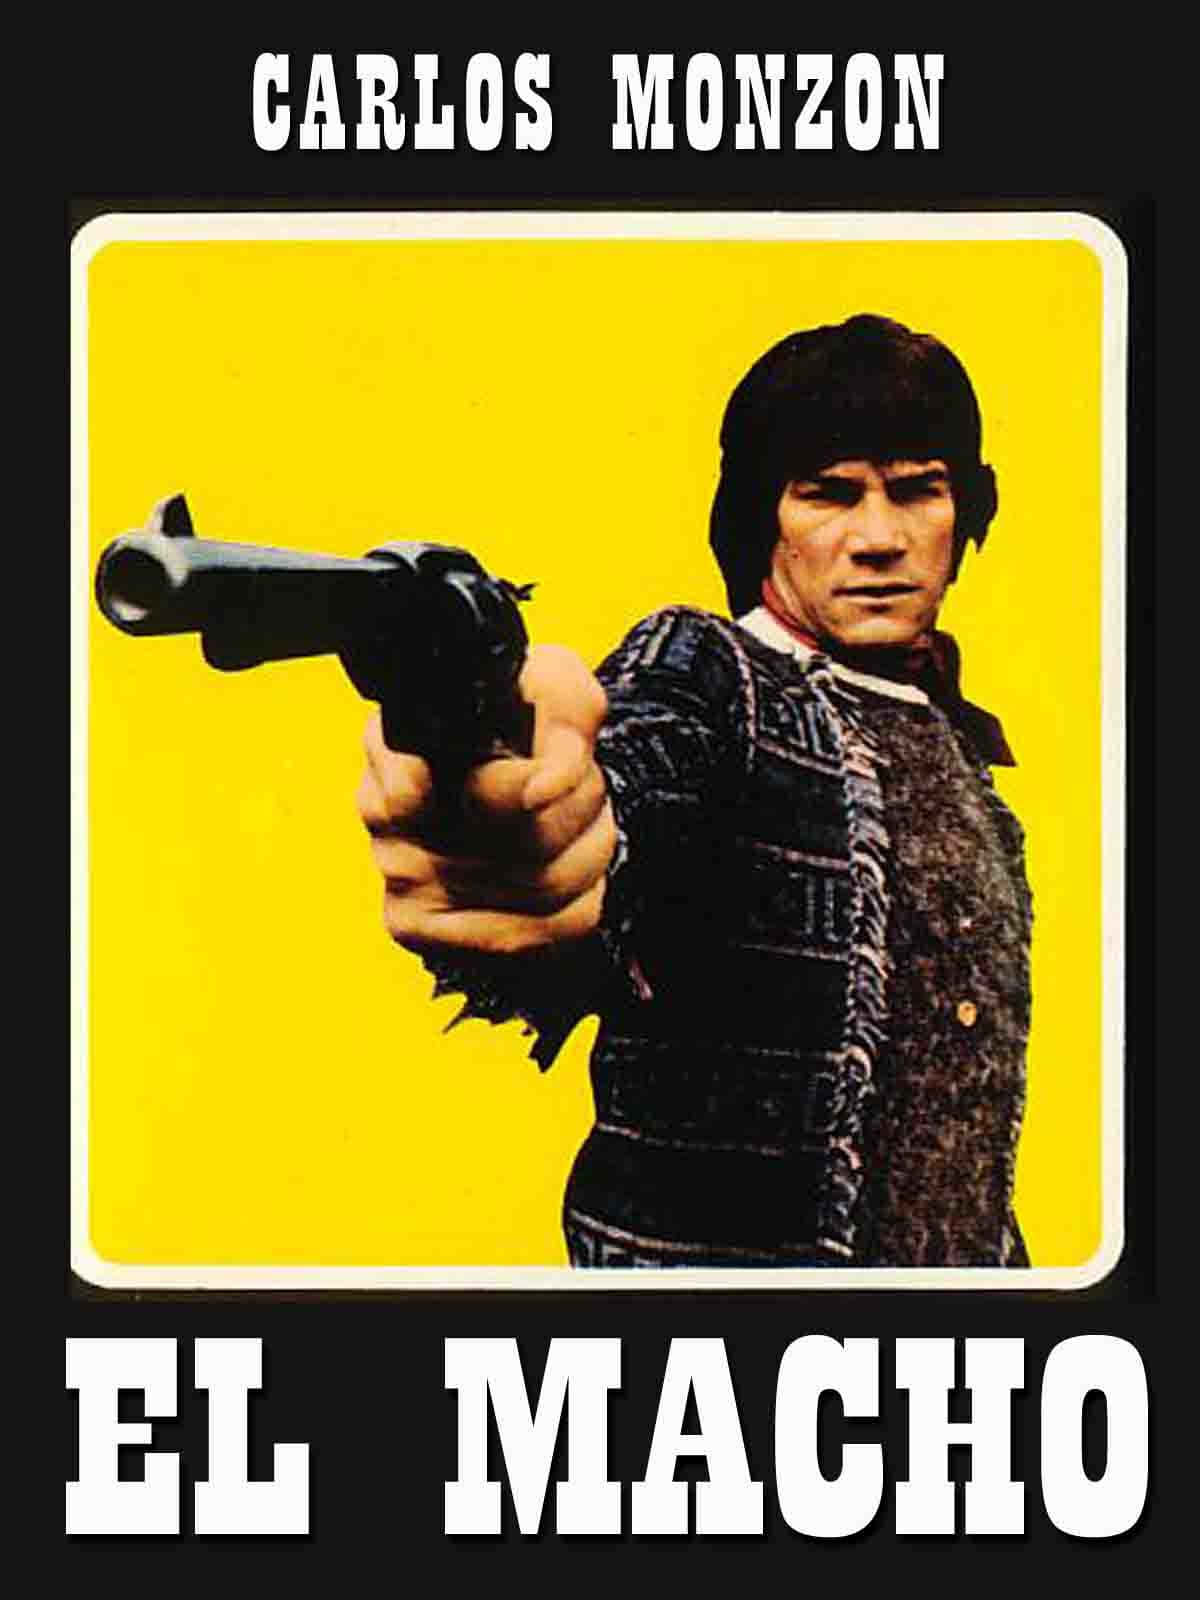 Carlos Monzon With A Gun Wallpaper